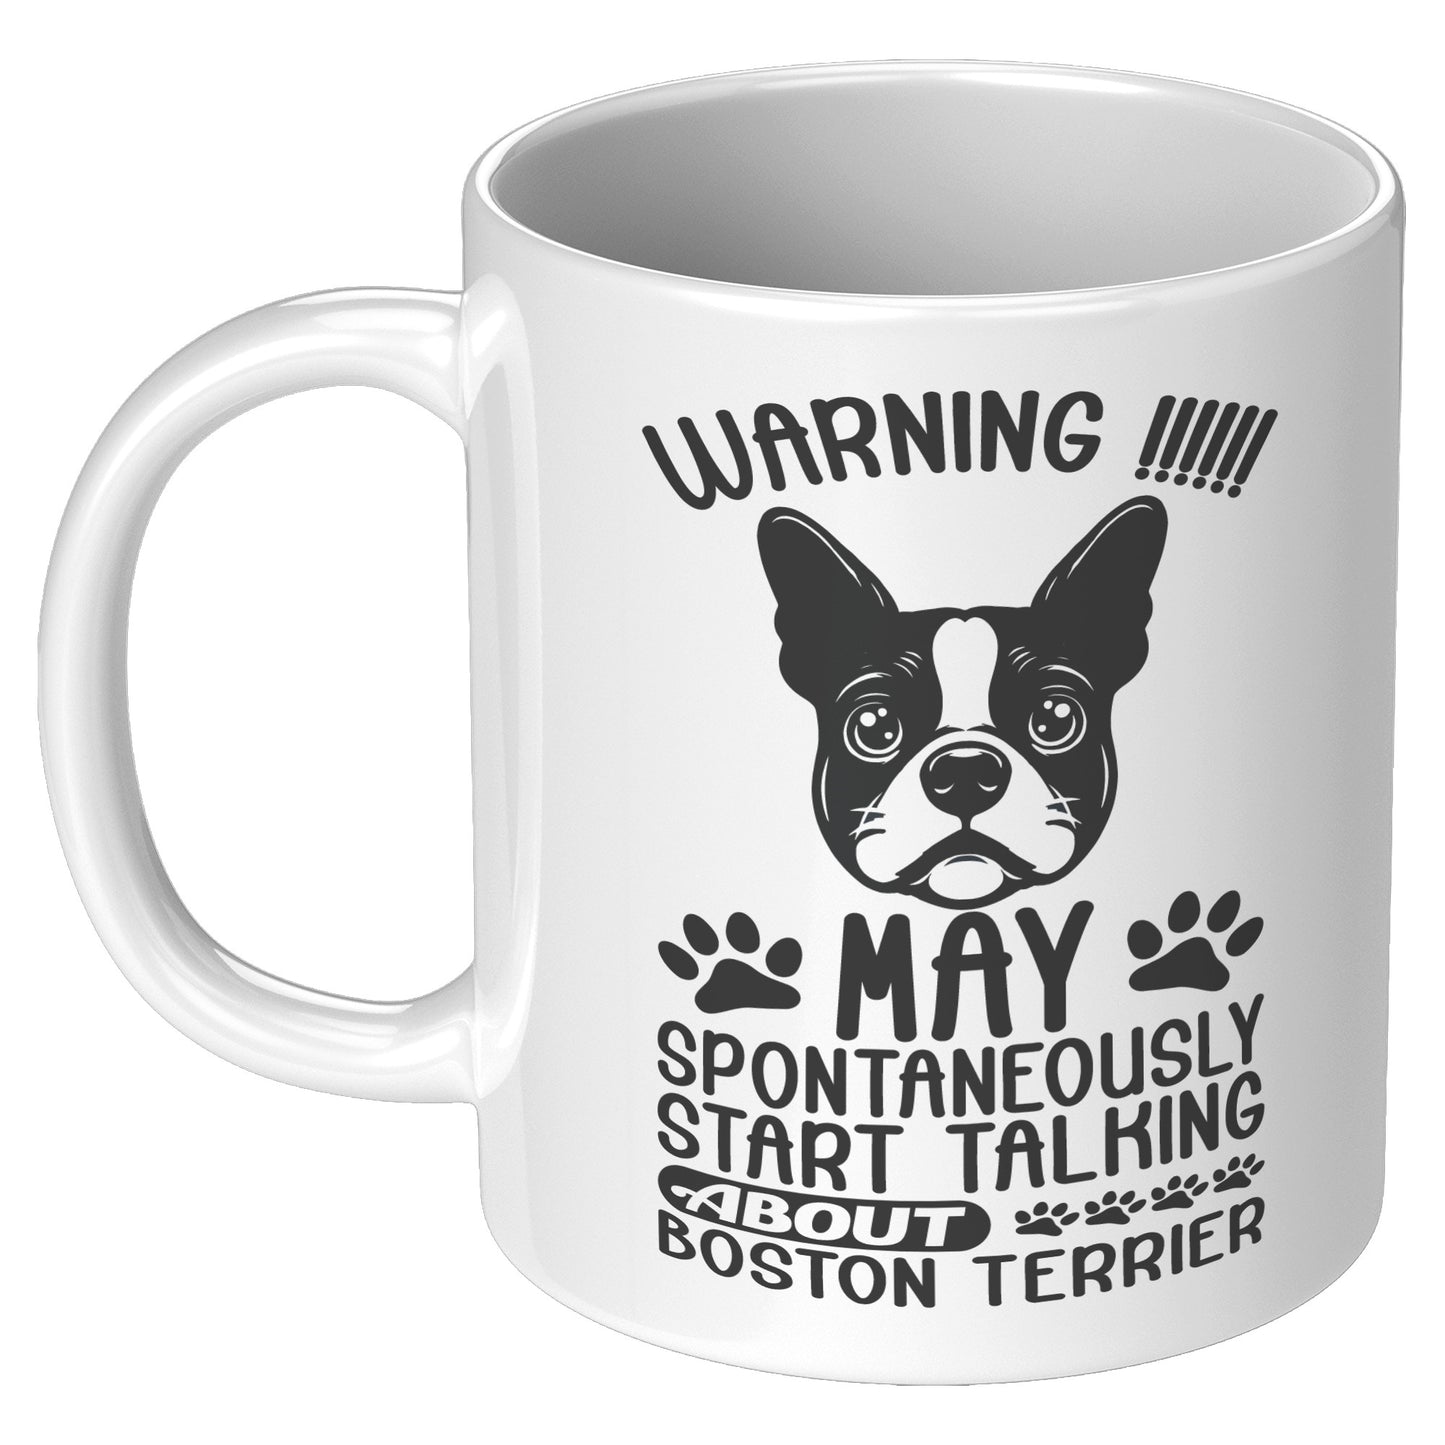 Jax -Mug for Boston Terrier lovers